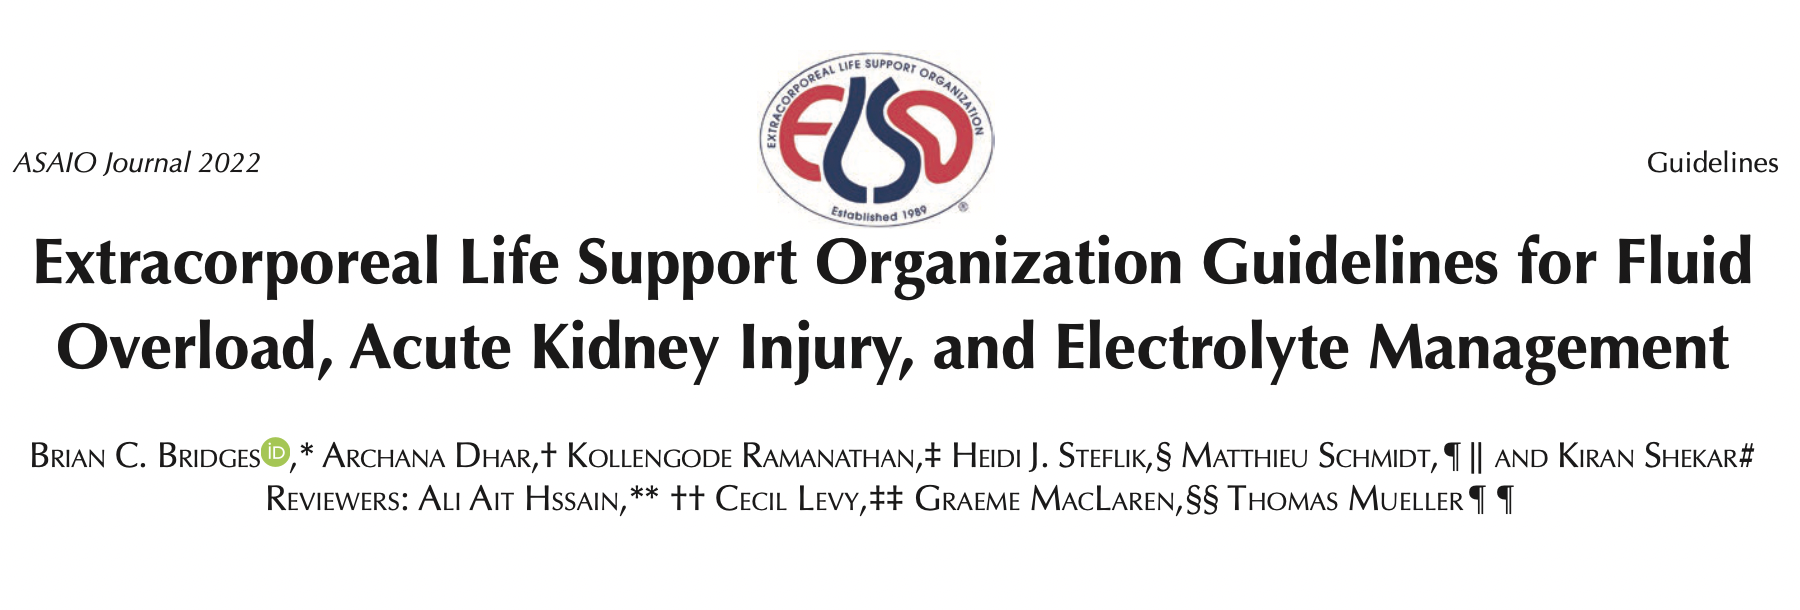 022年ELSO指南：液体超负荷、急性肾损伤和电解质的管理"